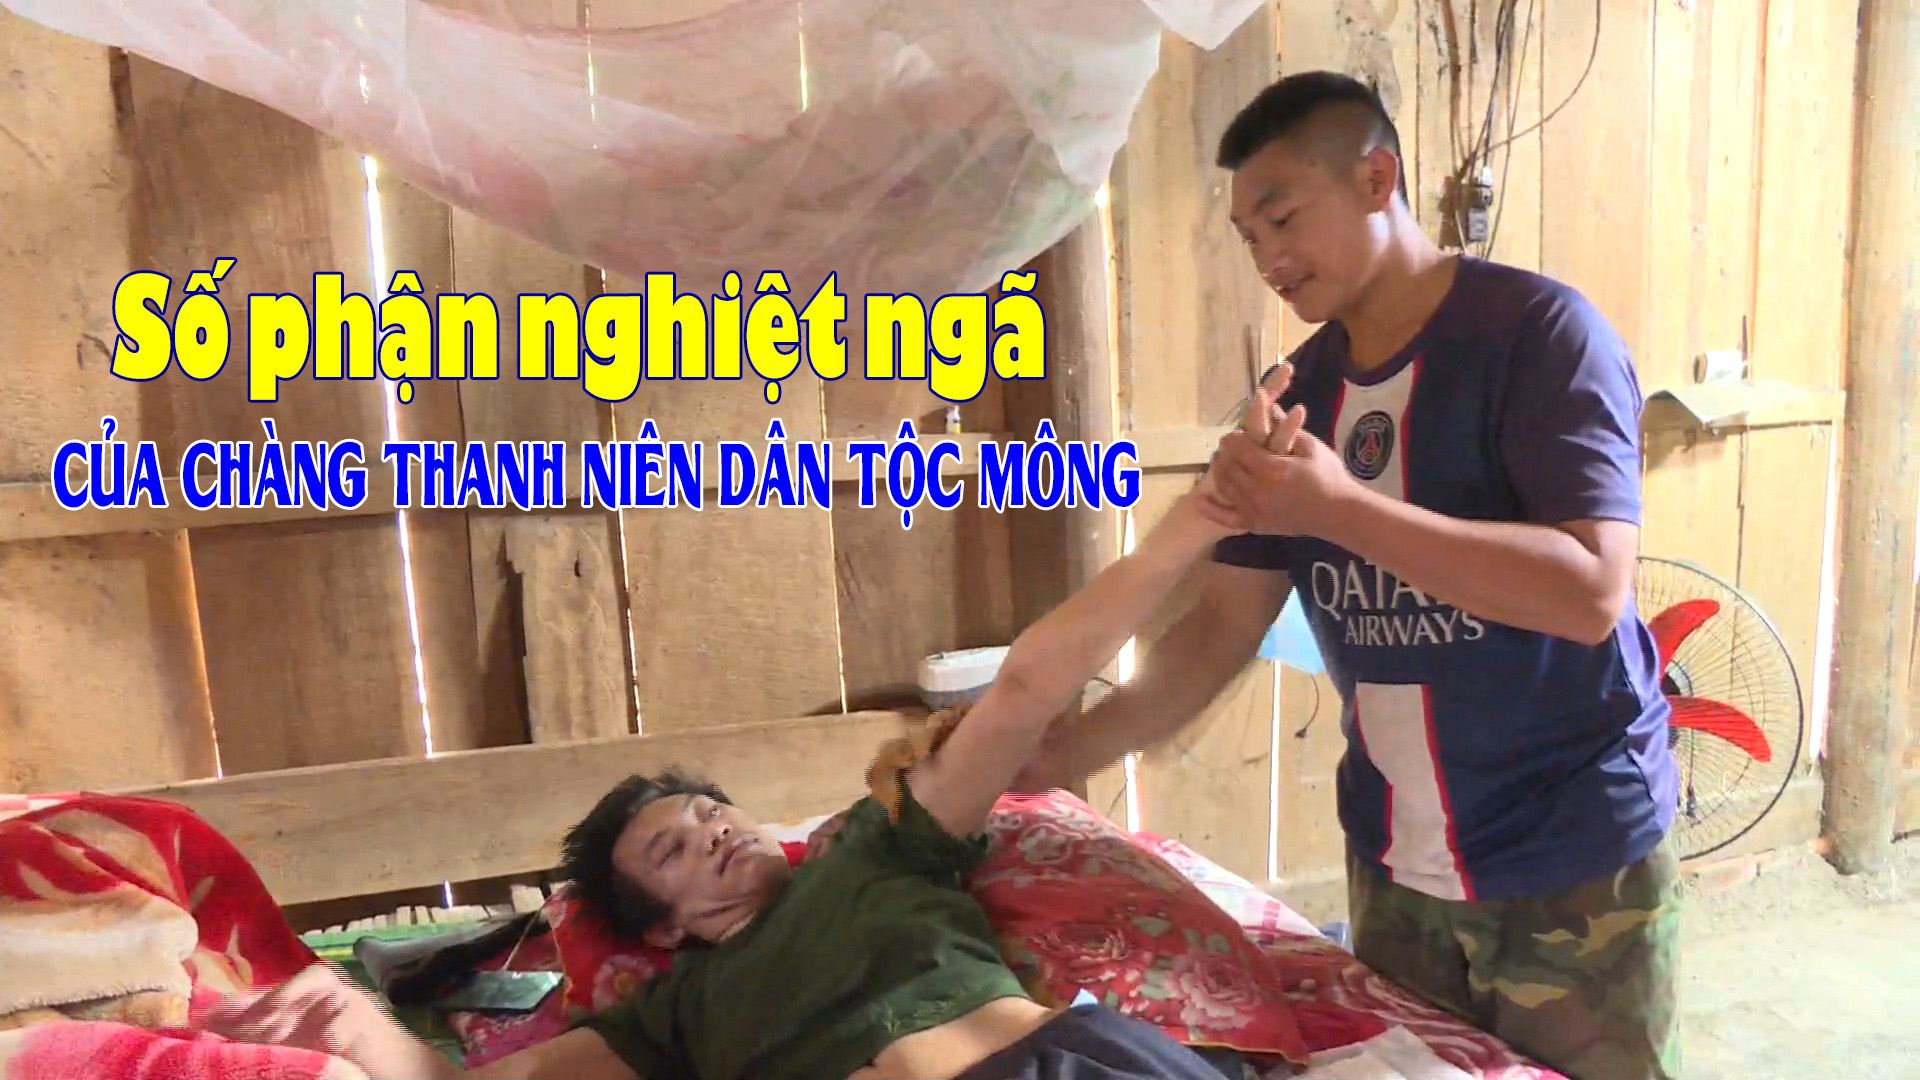 Số phận nghiệt ngã của chàng thanh niên dân tộc Mông